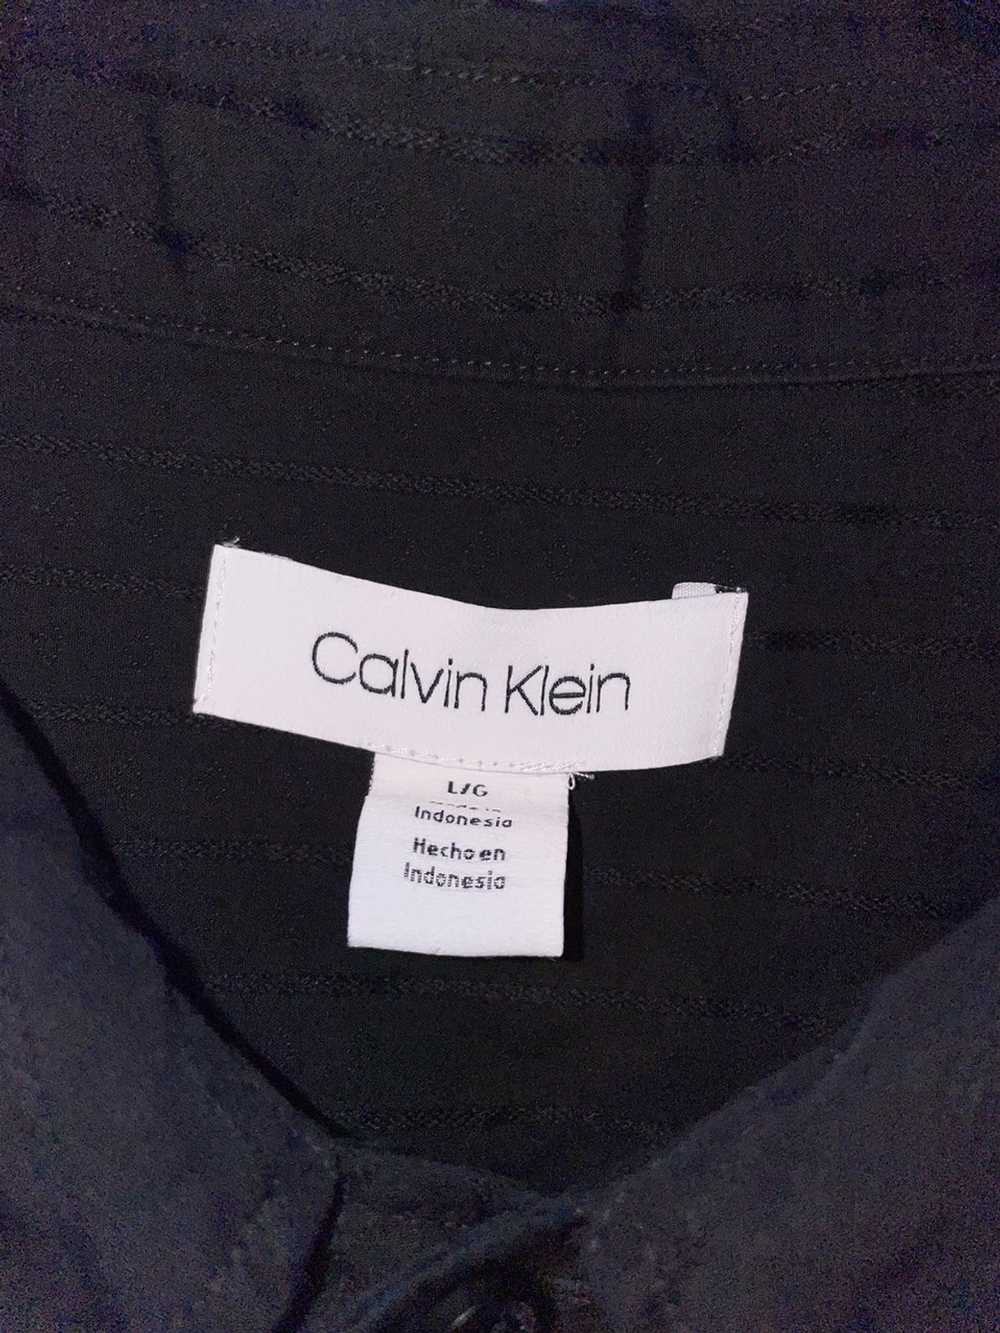 Calvin Klein Calvin Klein pin stripe button up - image 2